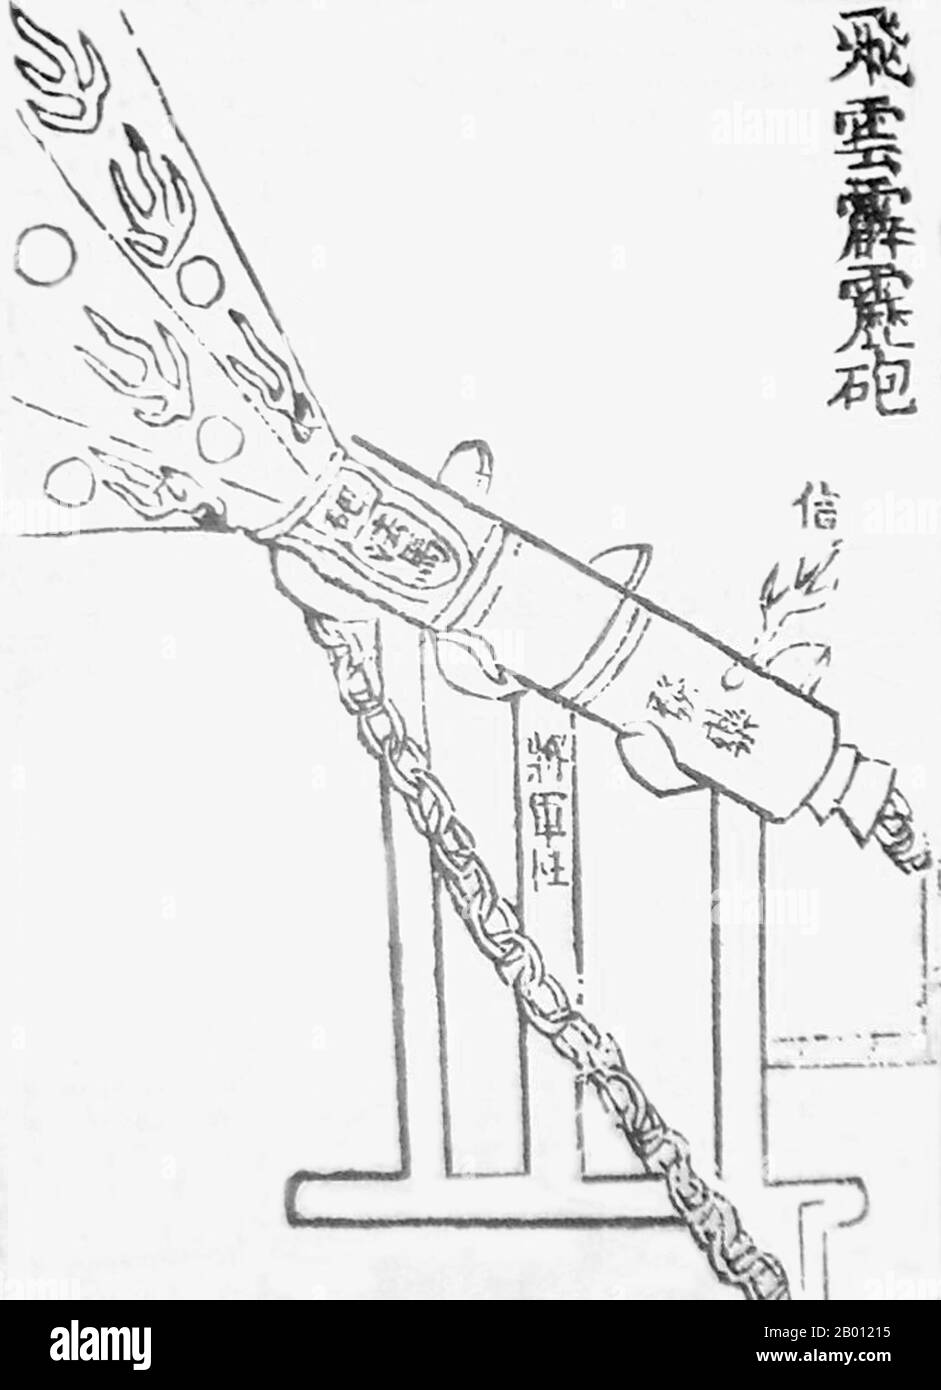 Cina: Un cannone cinese del 14 ° secolo, il 'flying-cloud thunderclap eruttor'. Illustrazione di Jiao Yu (XIV secolo) e Liu Ji (1311-1375), XIV secolo. Un'illustrazione del XIV secolo di un cannone cinese, o eruzione, che sparò proto-conchiglie come bombe di ghisa. Questa illustrazione è stata descritta nel trattato militare del XIV secolo dell'Huolongjing, edito e compilato da Liu Ji e Jiao Yu, con la prefazione aggiunta nel 1412. Questo cannone specifico è stato chiamato "eruzione di tuoni volanti" (feiyun pilipao). Foto Stock